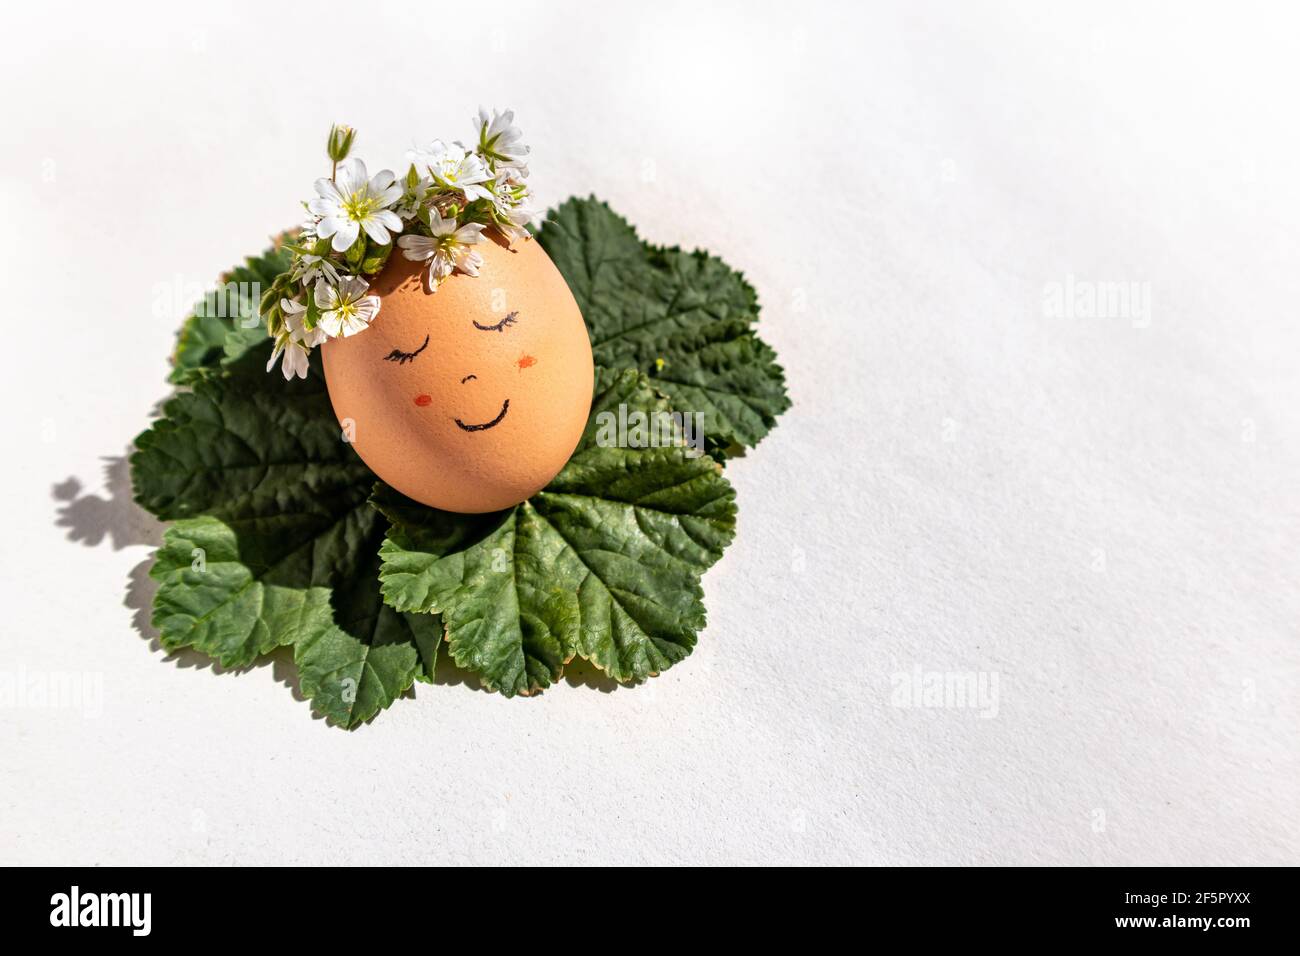 Ein lächelndes Ei für ein Ostern und Frühling Konzept. Ein Ei mit lächelndem Gesicht und einem Blumenkranz, der den Frühlingssonne auf Malvablättern genießt. Stockfoto